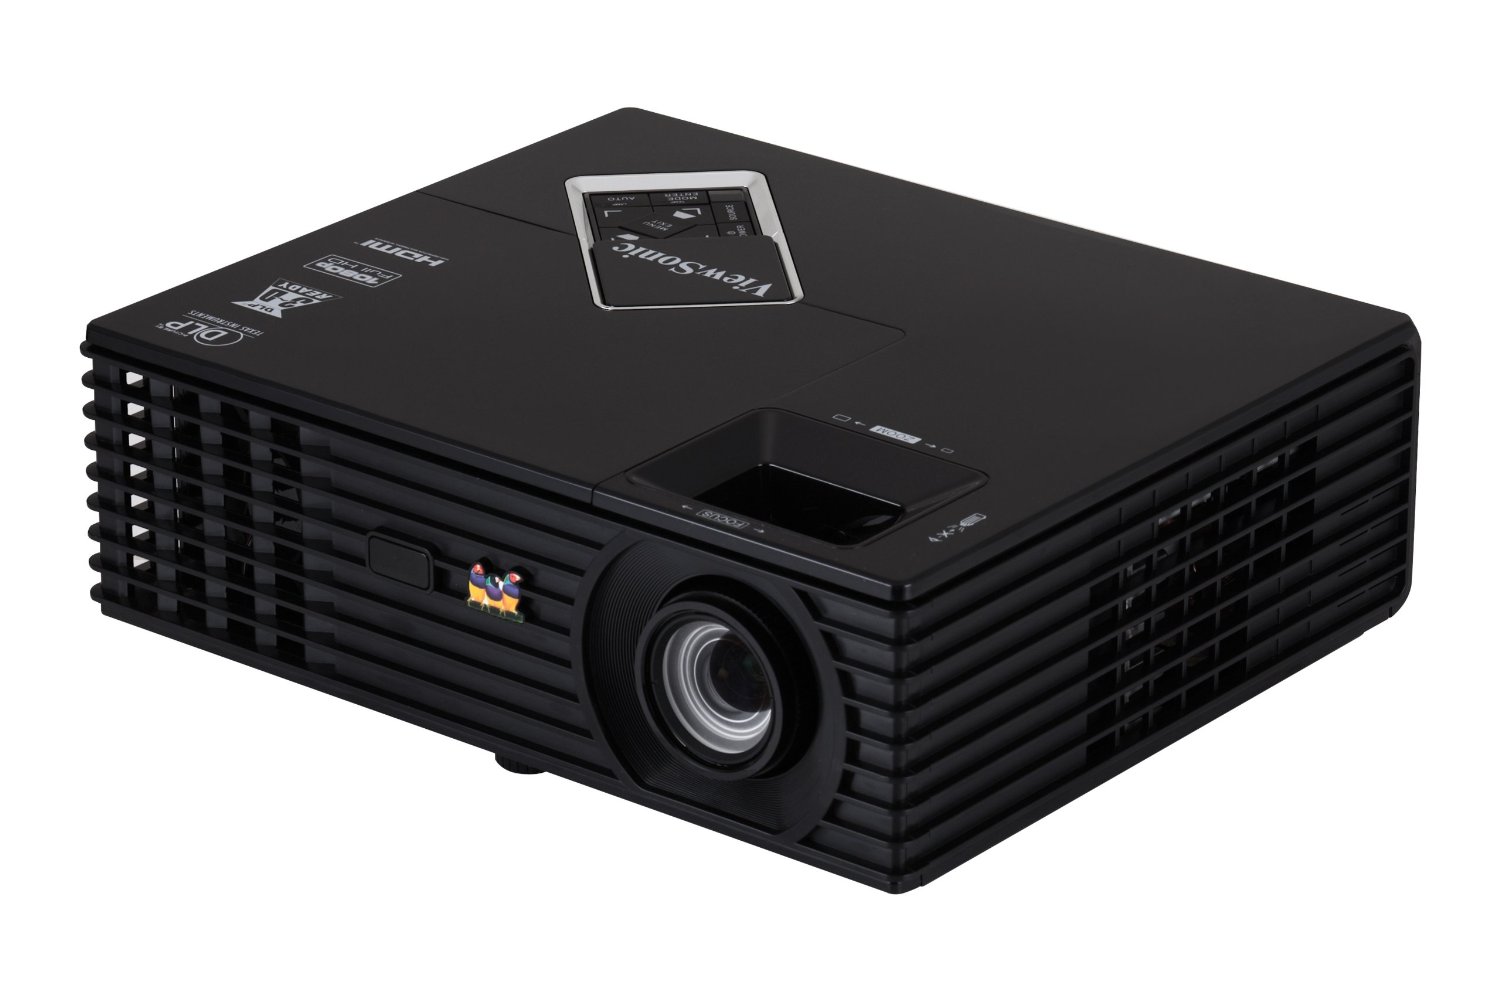 ViewSonic PJD7820HD Projector